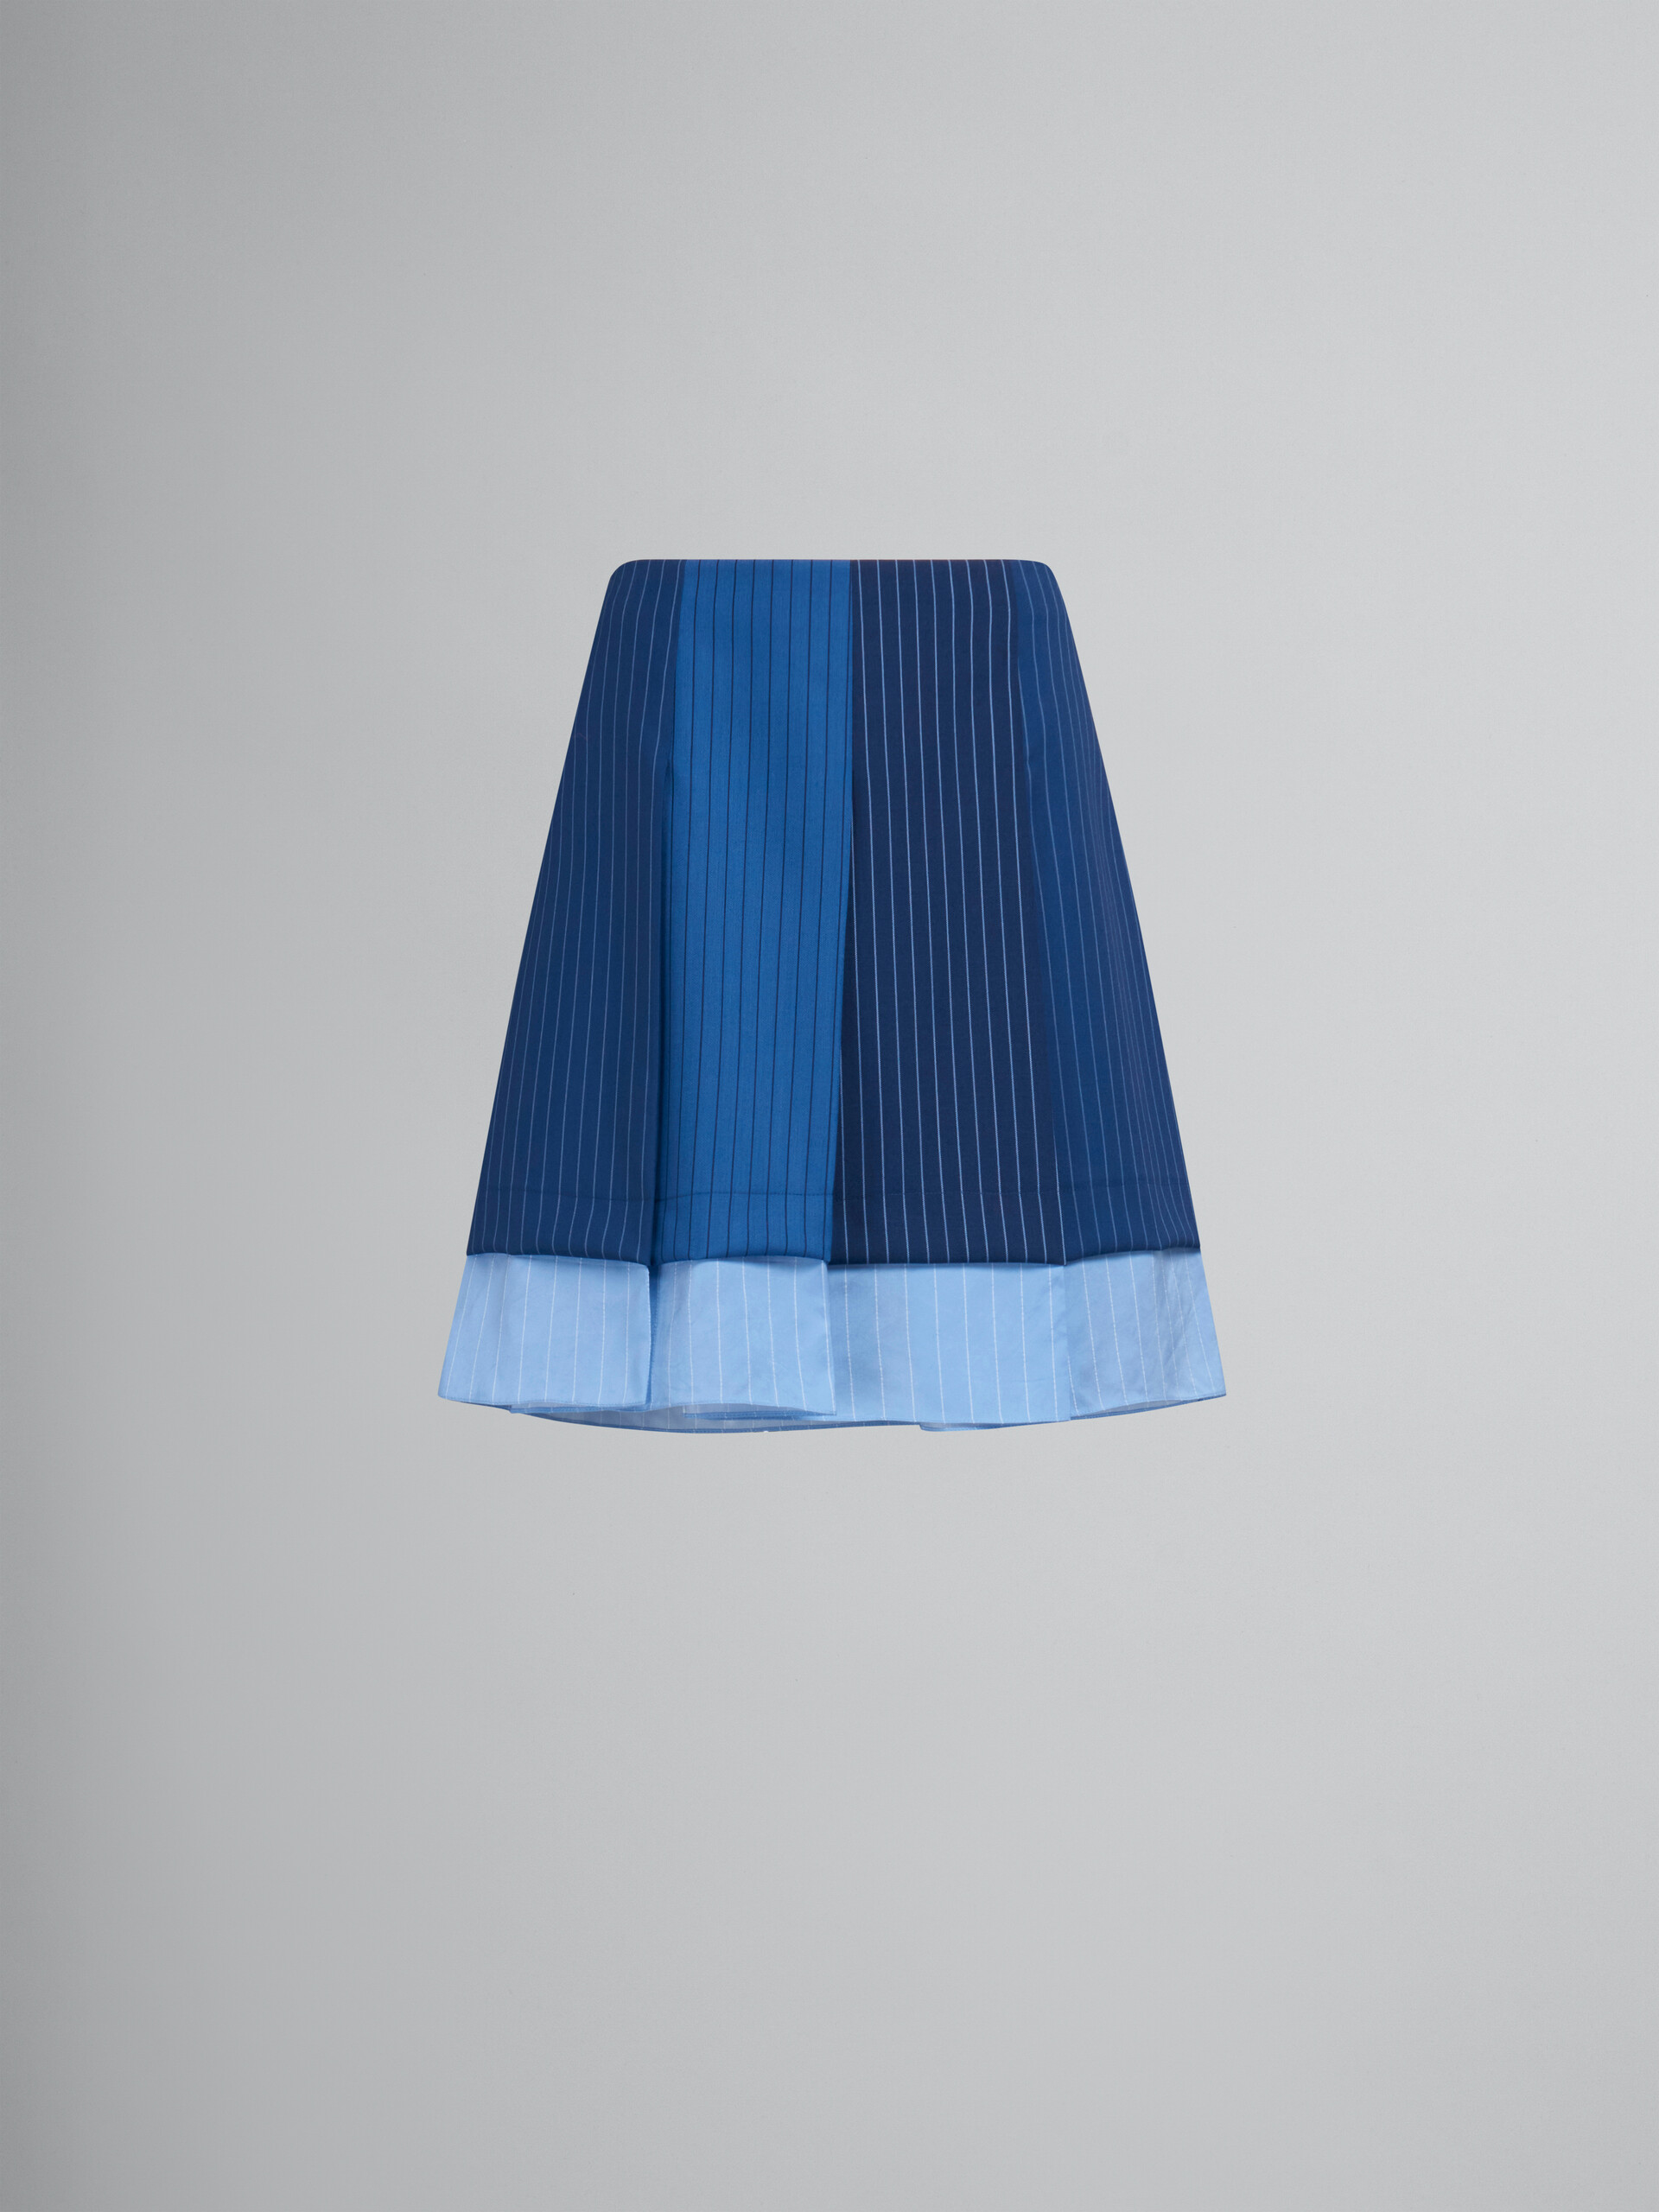 Minifalda de lana azul degradado con raya diplomática y plisados - Faldas - Image 1